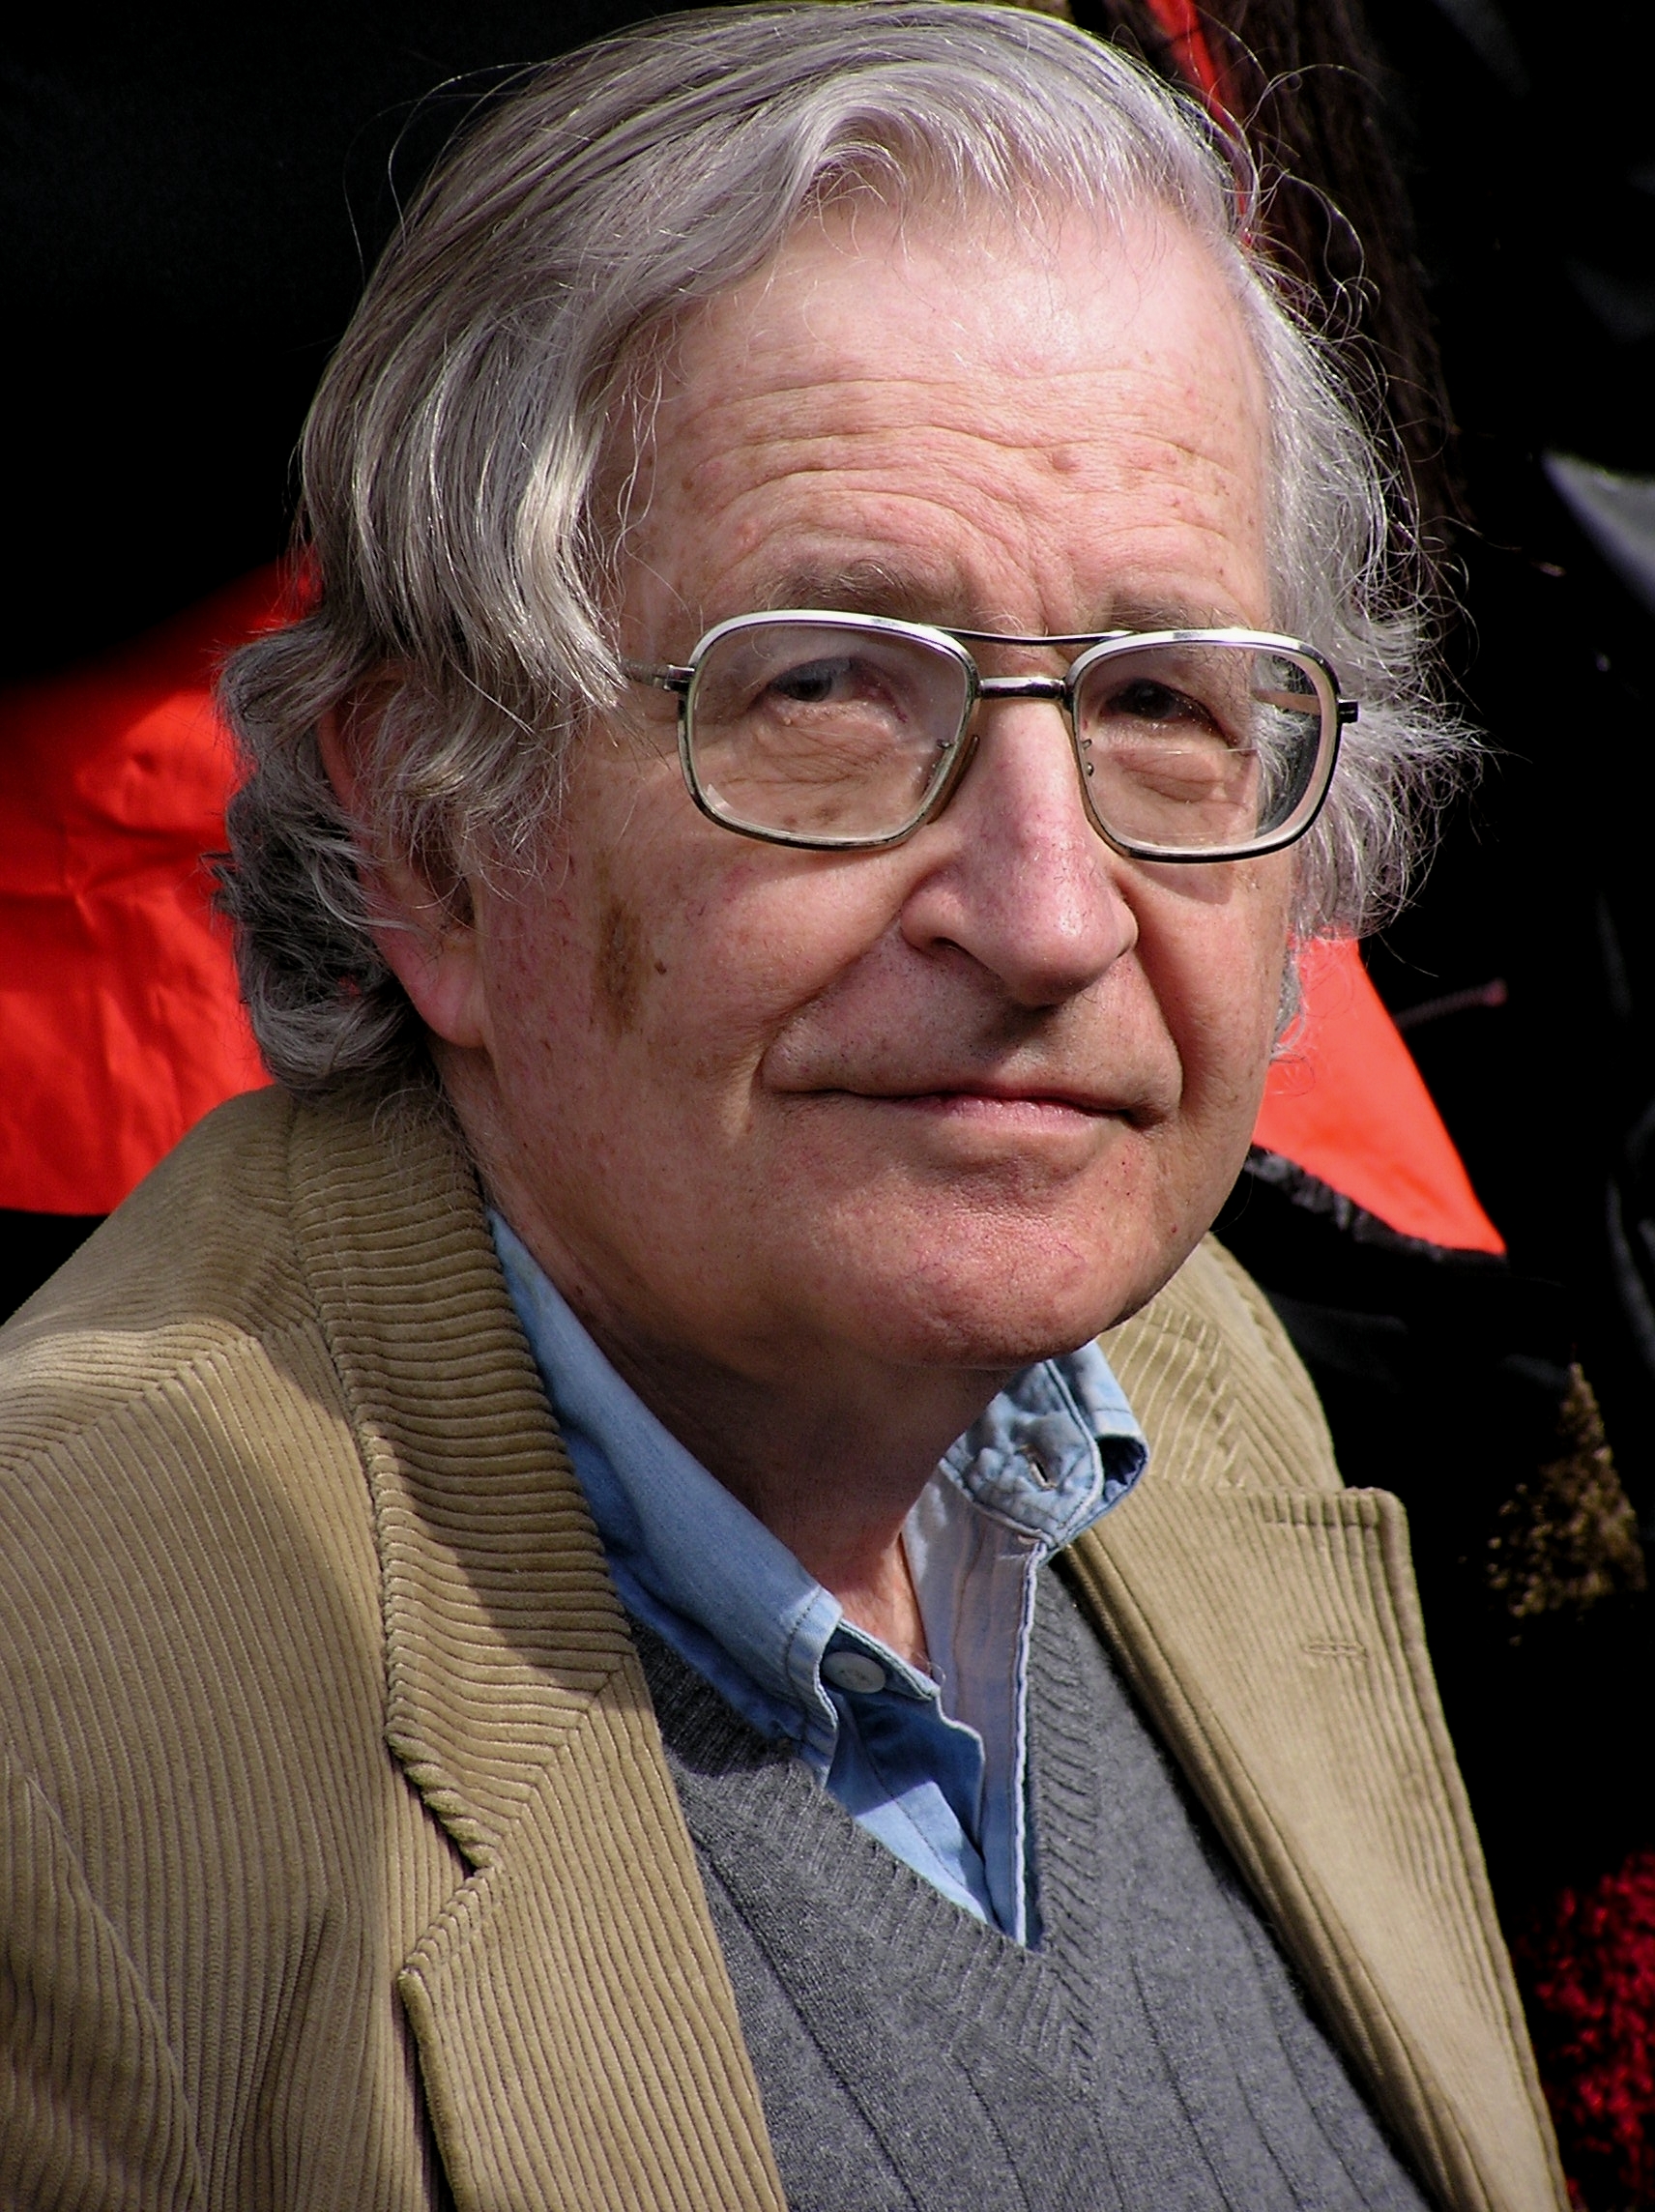 Quais são as opiniões políticas de Noam Chomsky?